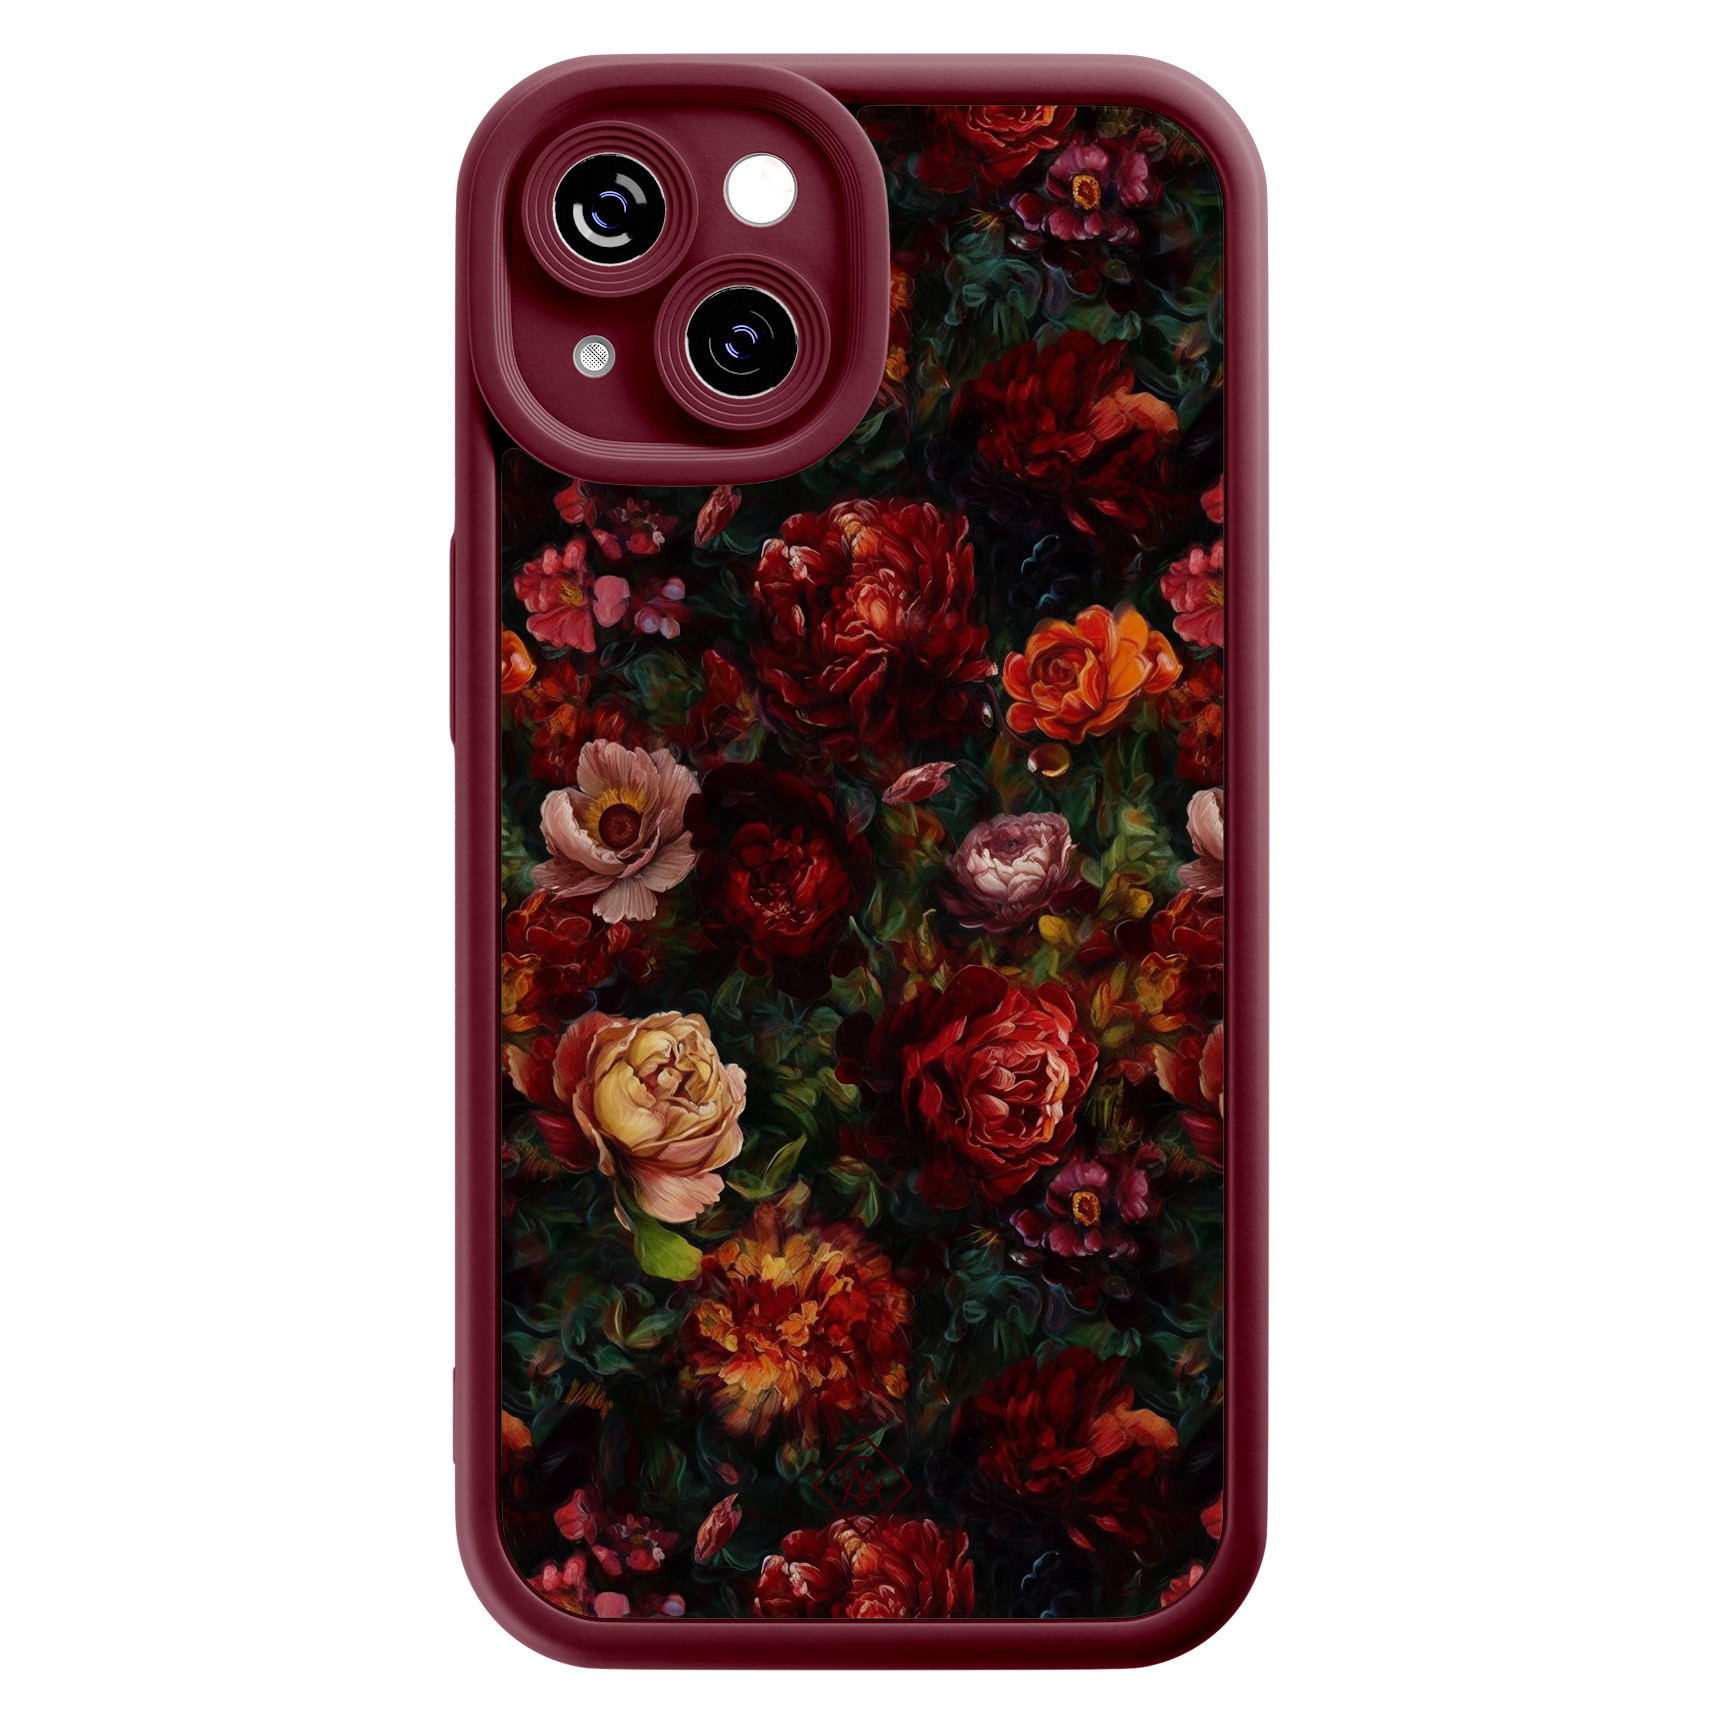 iPhone 14 siliconen case - Floral garden